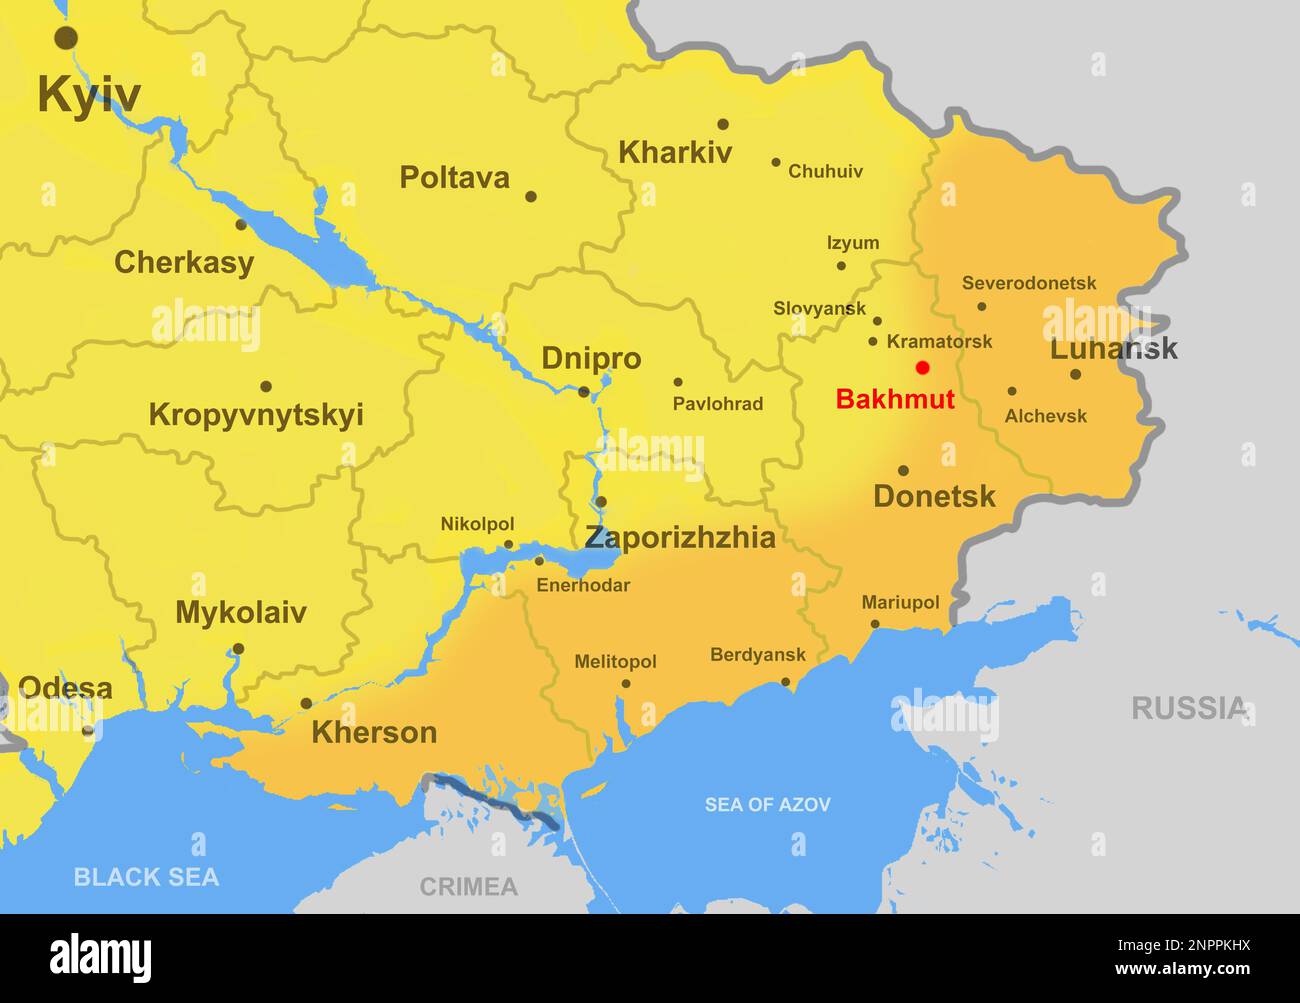 Bakhmut hot spot di guerra nella mappa del sud-est dell'Ucraina, territorio conquistato dalla Russia. Regioni di Luhansk, Donetsk, Kherson e Zaporizhzhia sul profilo m Foto Stock